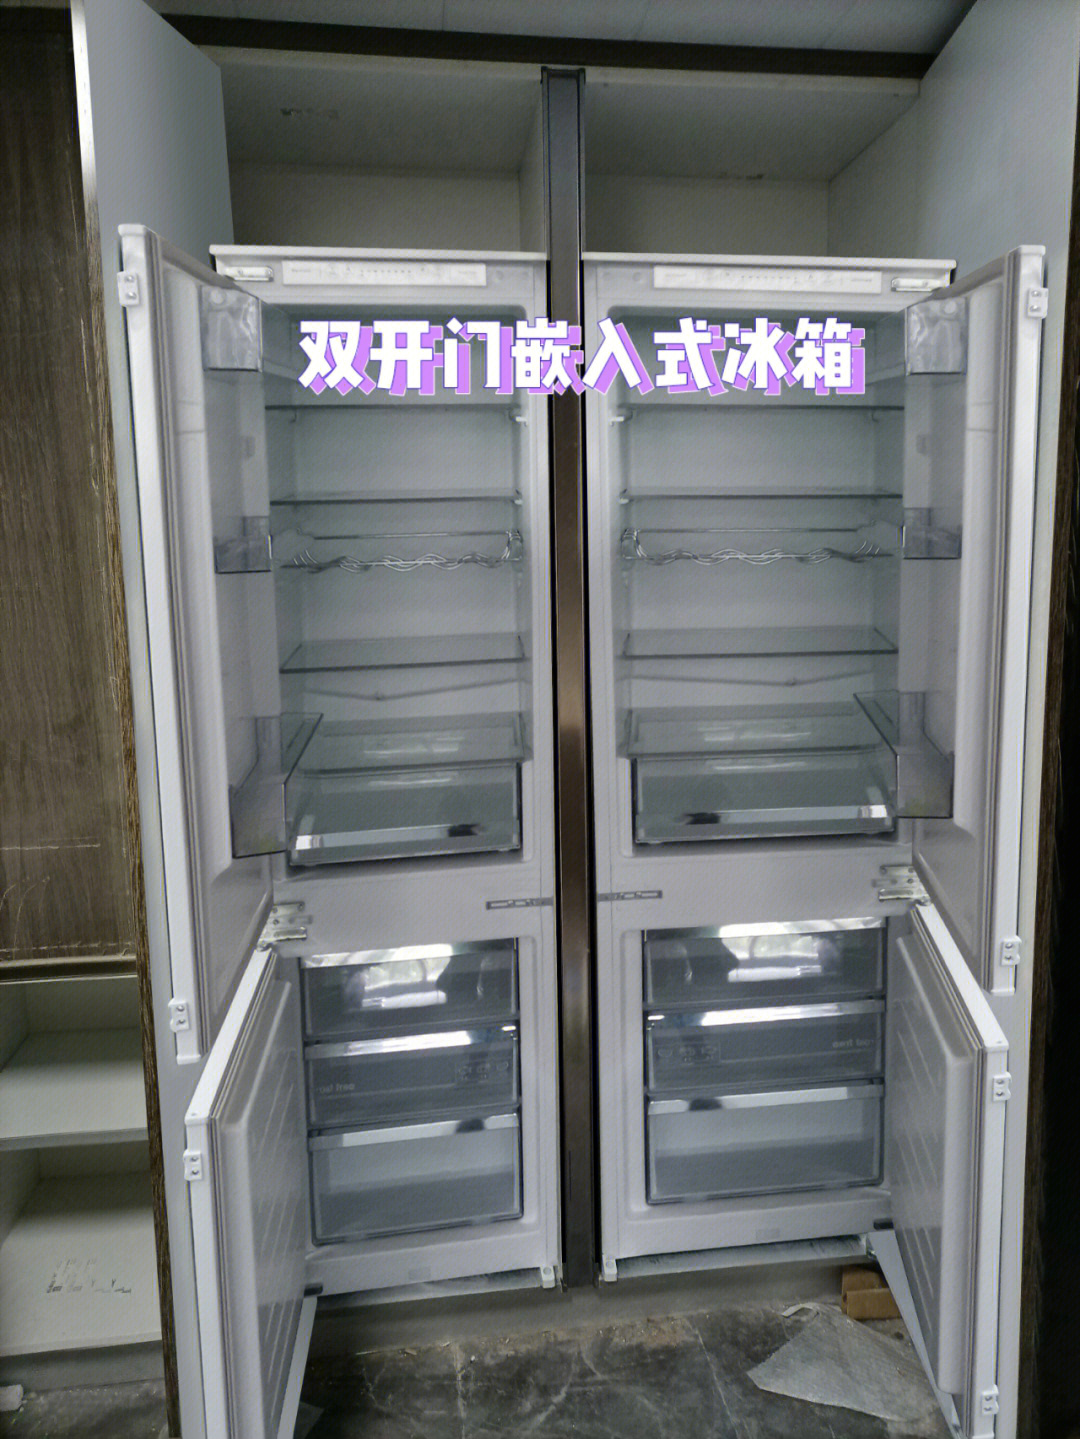 海信310wbp冰箱演示图片